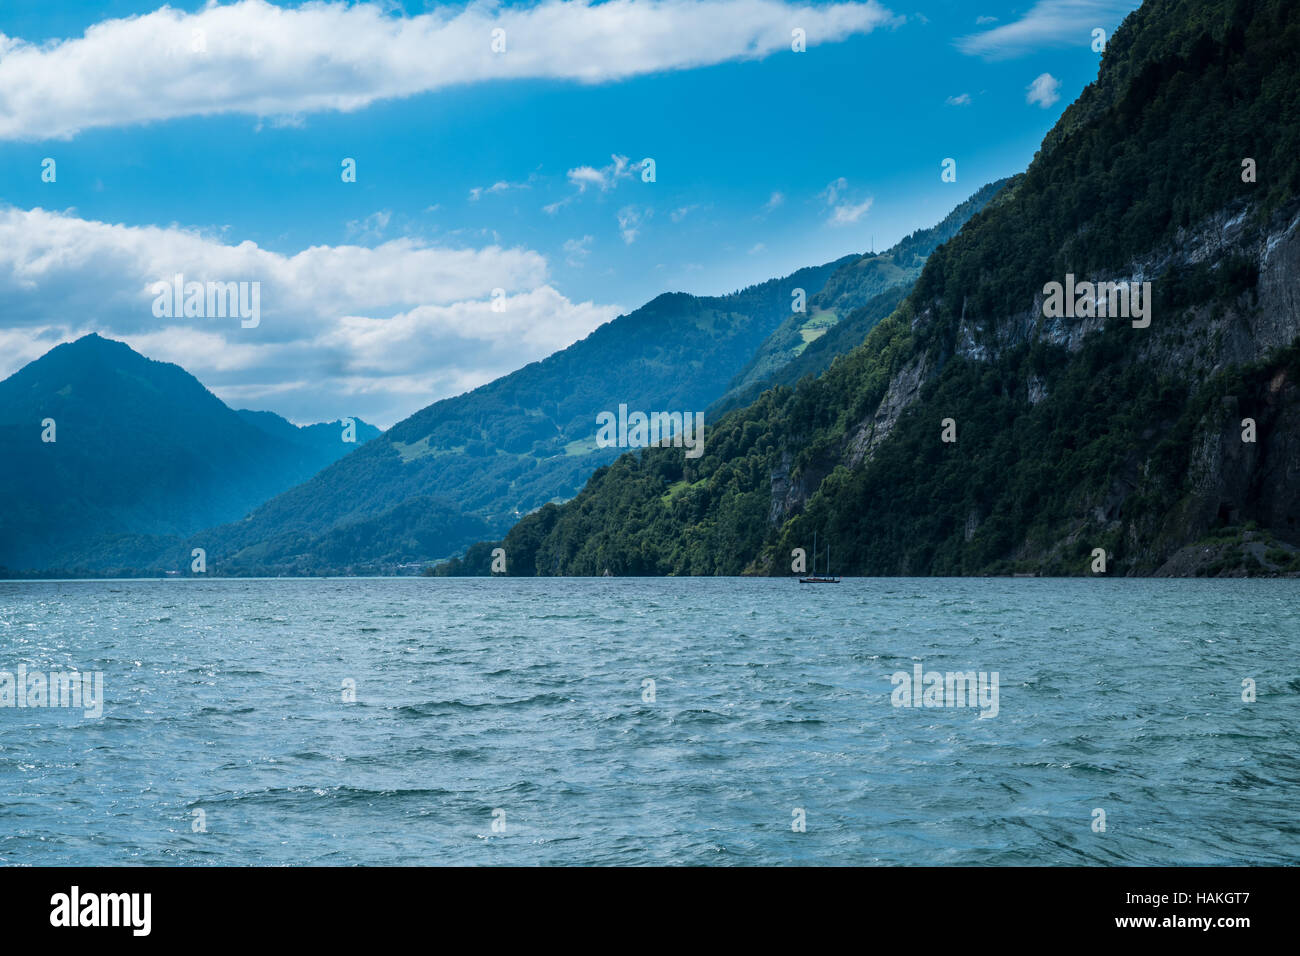 La vista mozzafiato sul lago con barche su di esso e le montagne sullo sfondo in Svizzera Foto Stock